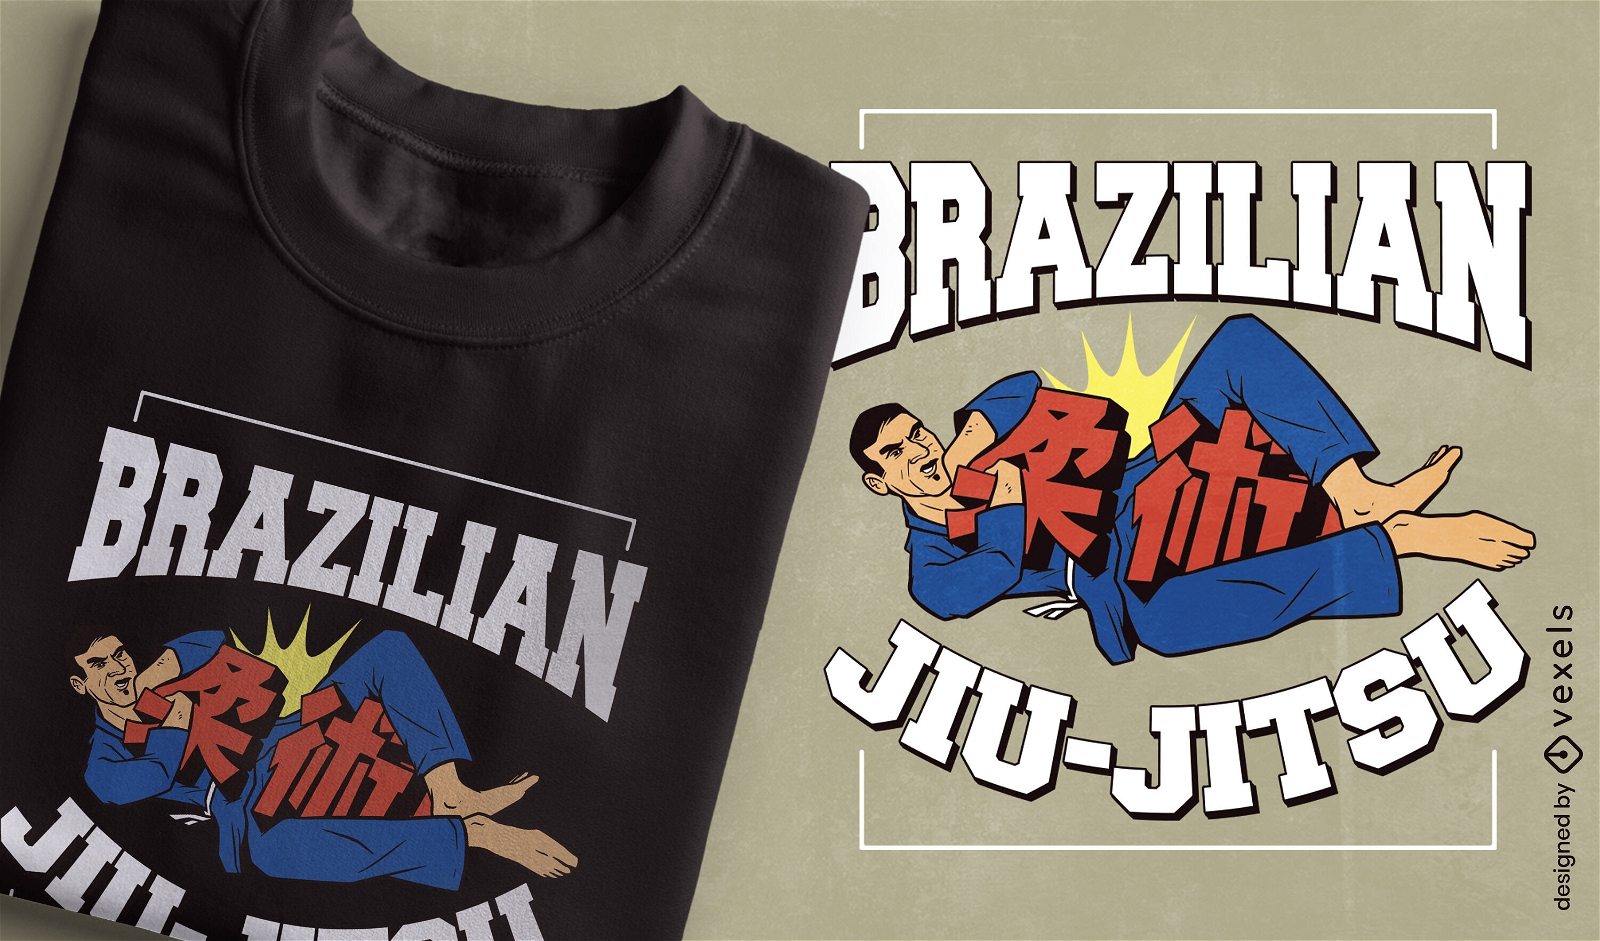 Dise?o de camiseta de jiu-jitsu brasile?o.